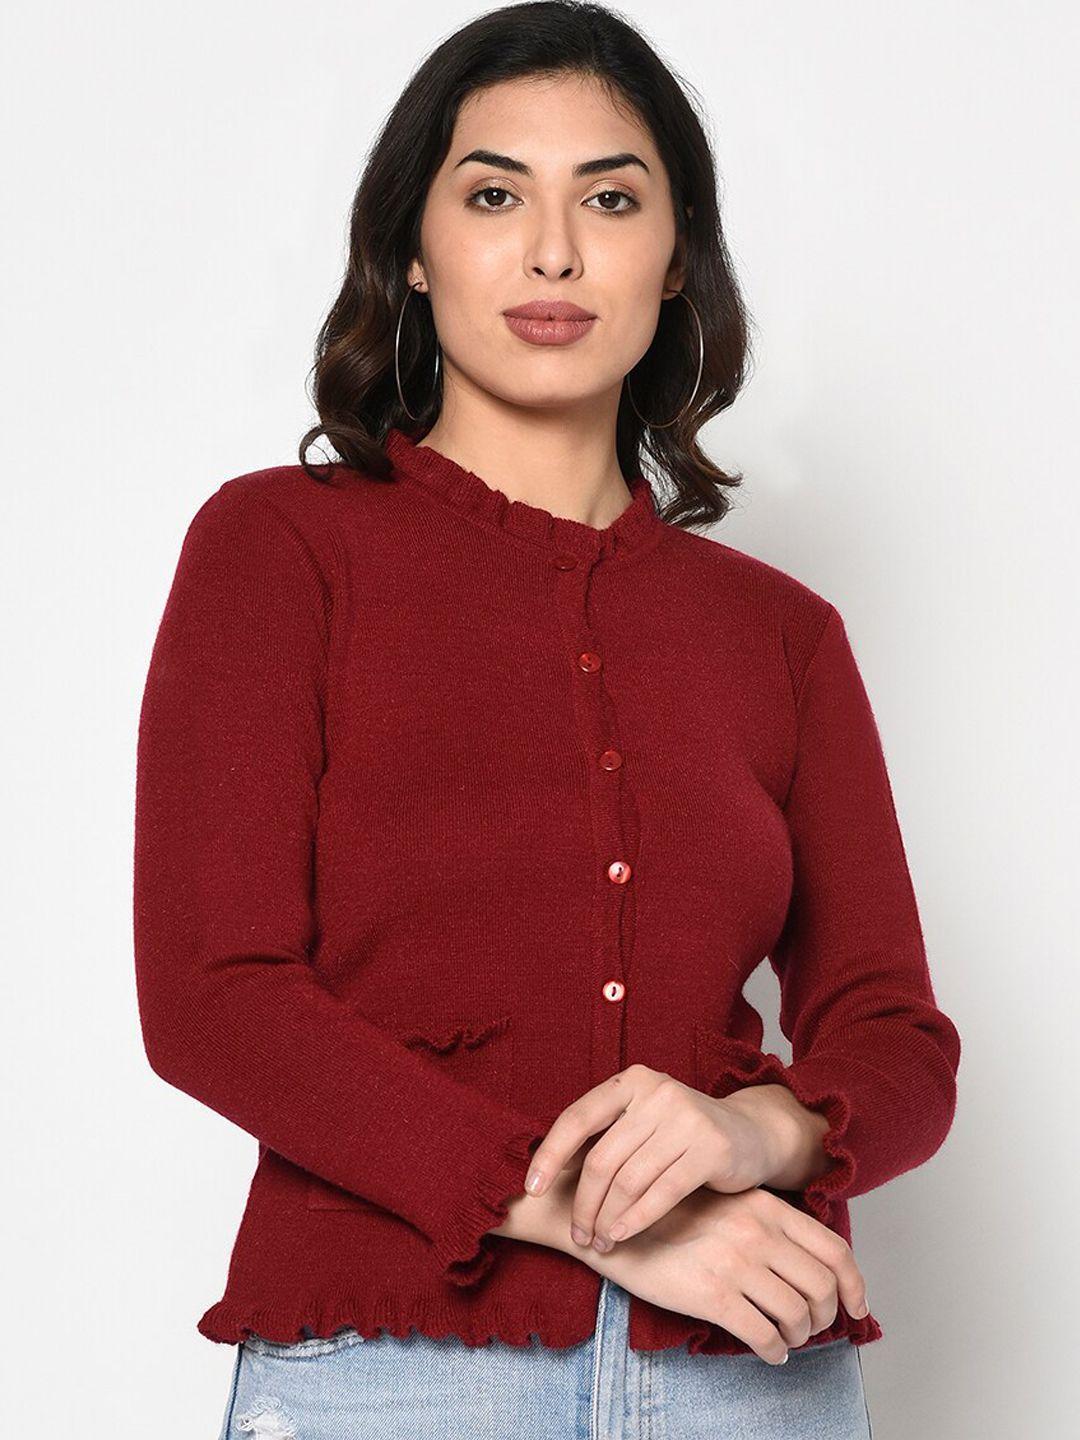 fabnest women maroon solid cardigan sweater